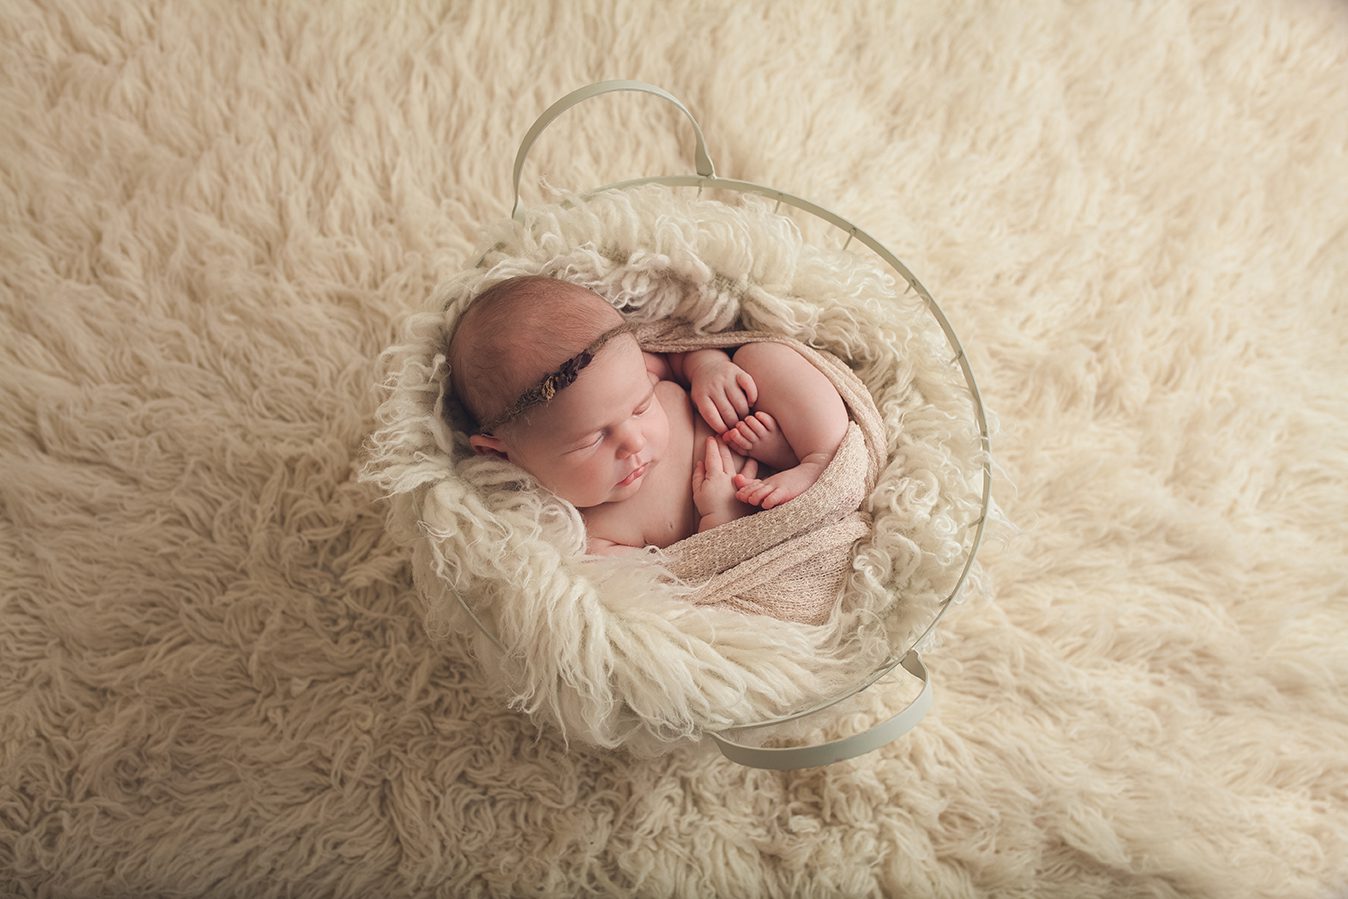 edmonton newborn photographer - posed in bucket